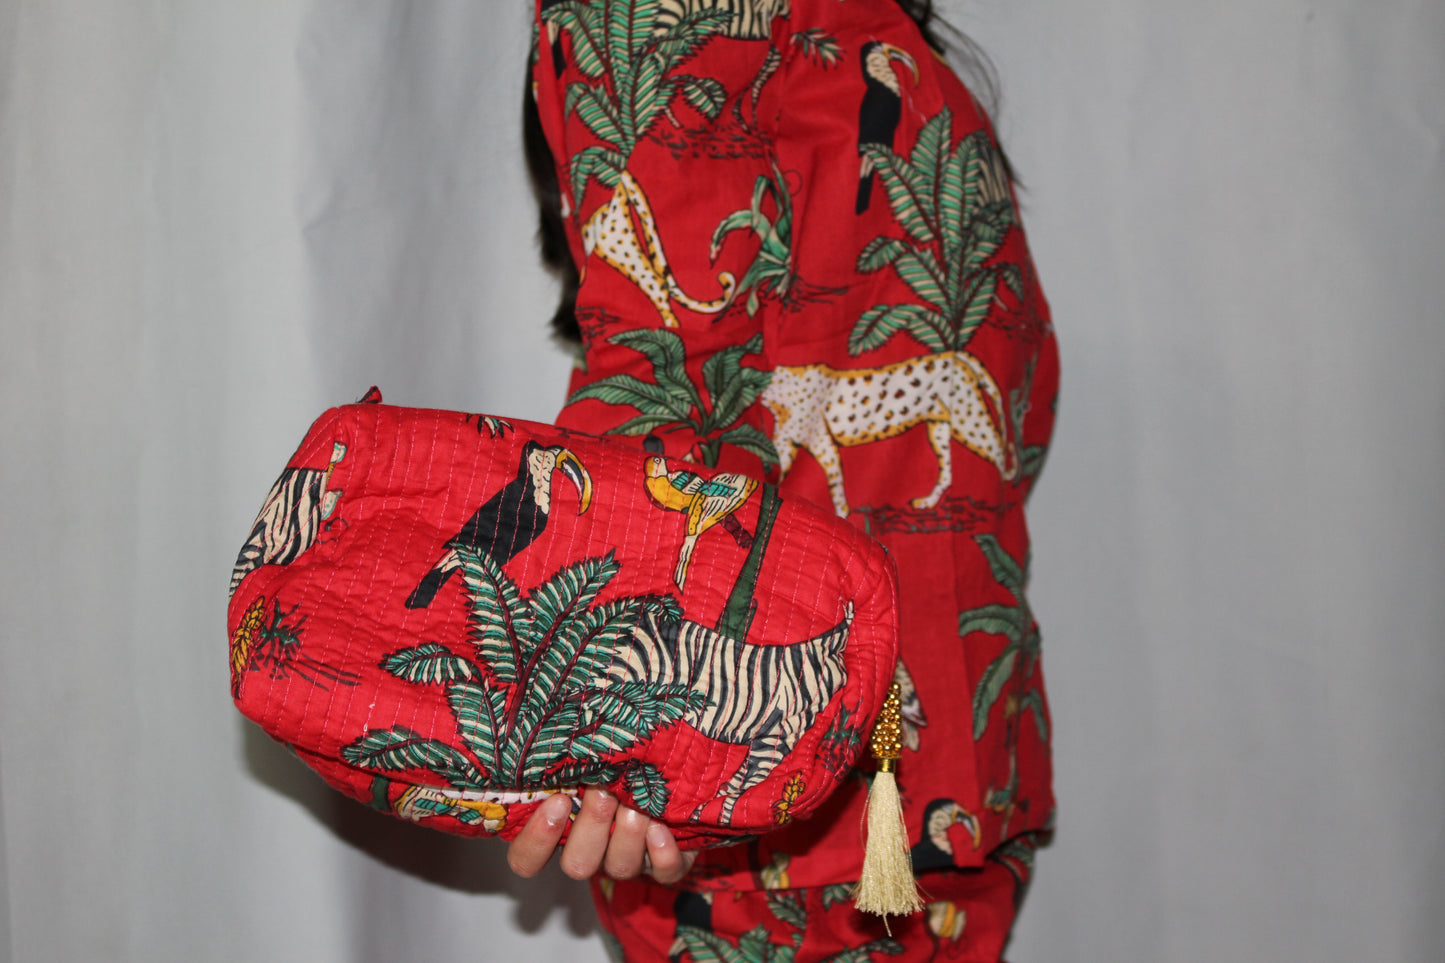 Jungle-Jamas! | Red Pajamas with Lush Jungle Pattern - DharBazaar